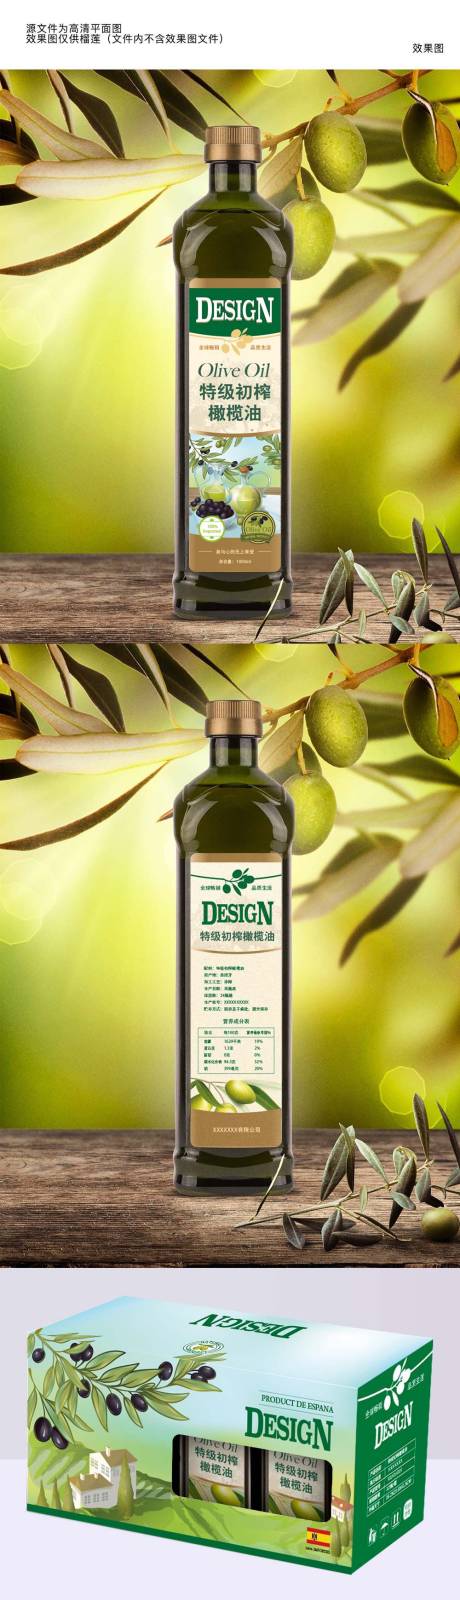 原装进口橄榄油瓶贴设计和外包装箱设计